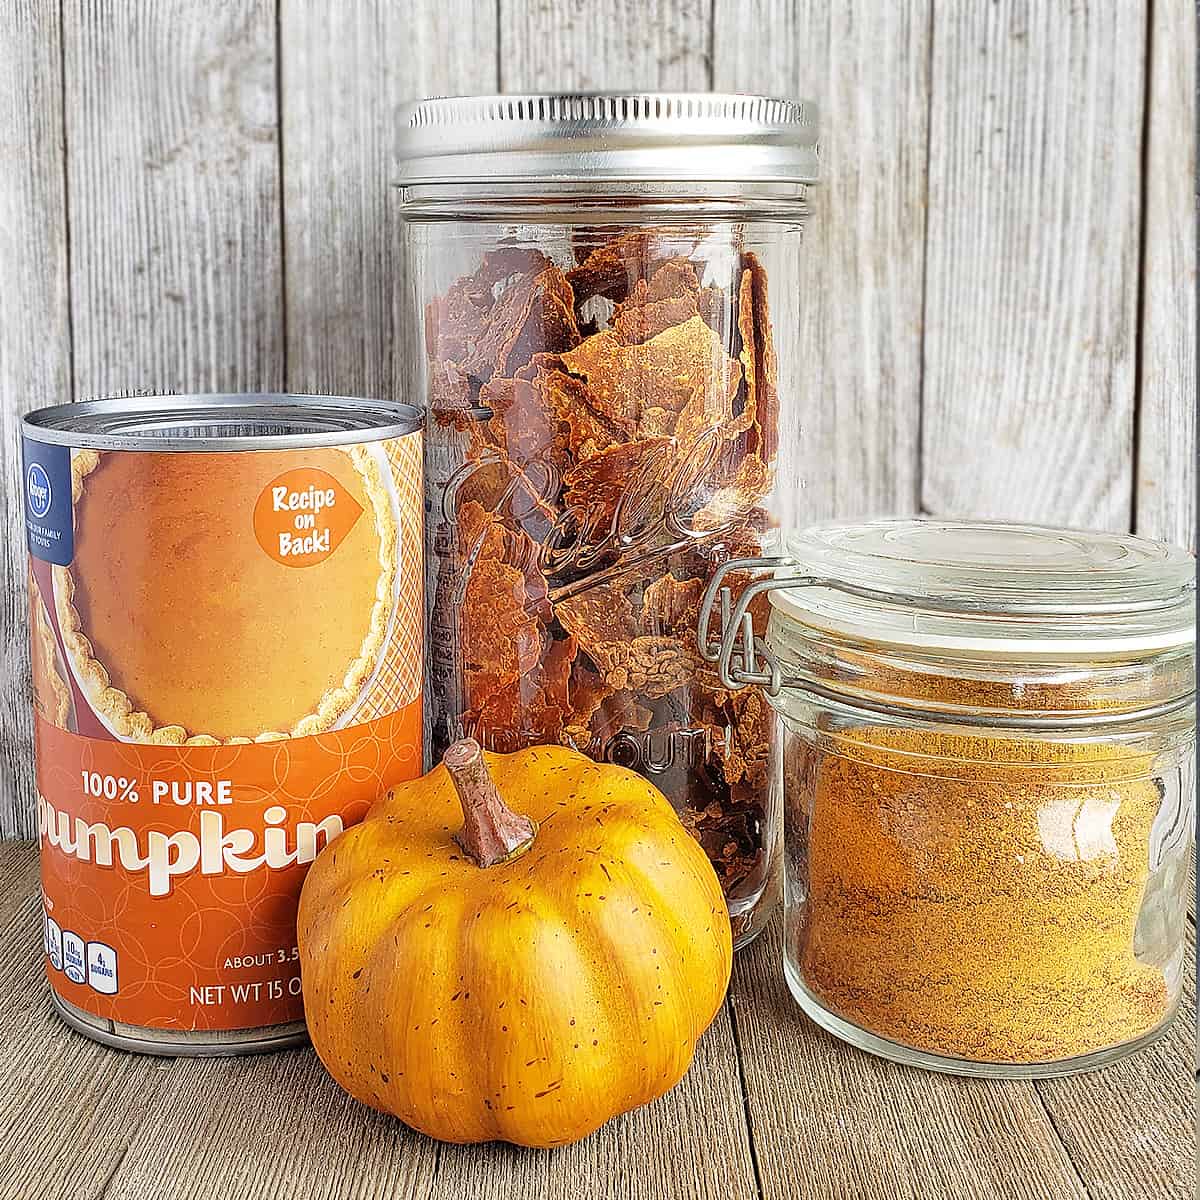 Dehydrate Canned Pumpkin – Make Pumpkin Powder